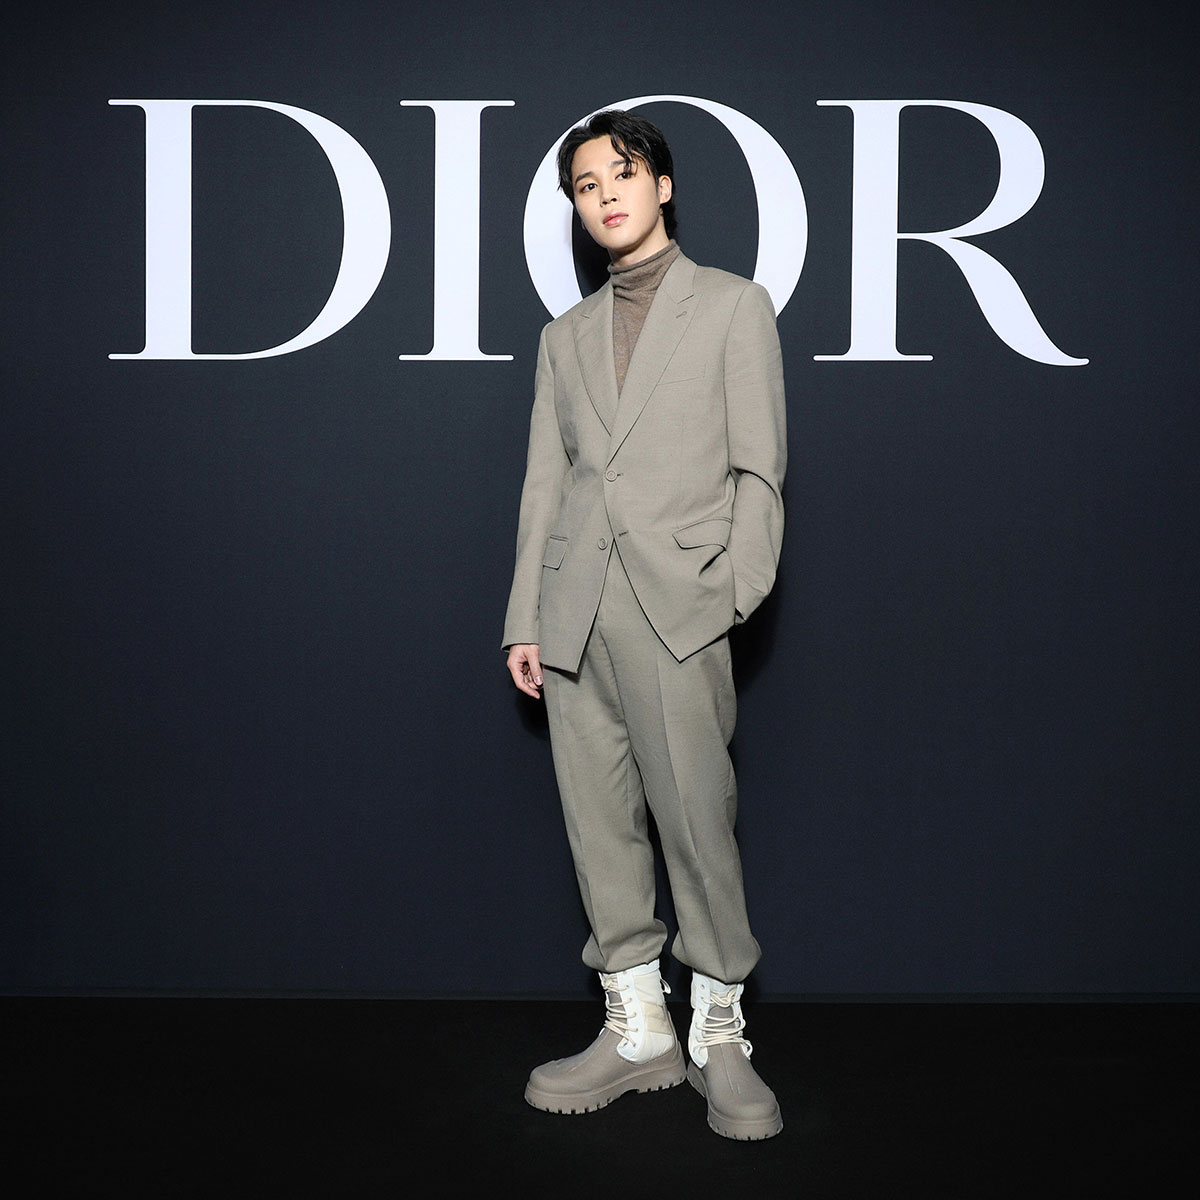 Dior công bố doanh thu tăng khủng vì Đại sứ toàn cầu Jisoo vững vàng  đứng top nữ idol có danh tiếng cao nhất  Kites cine We Fly